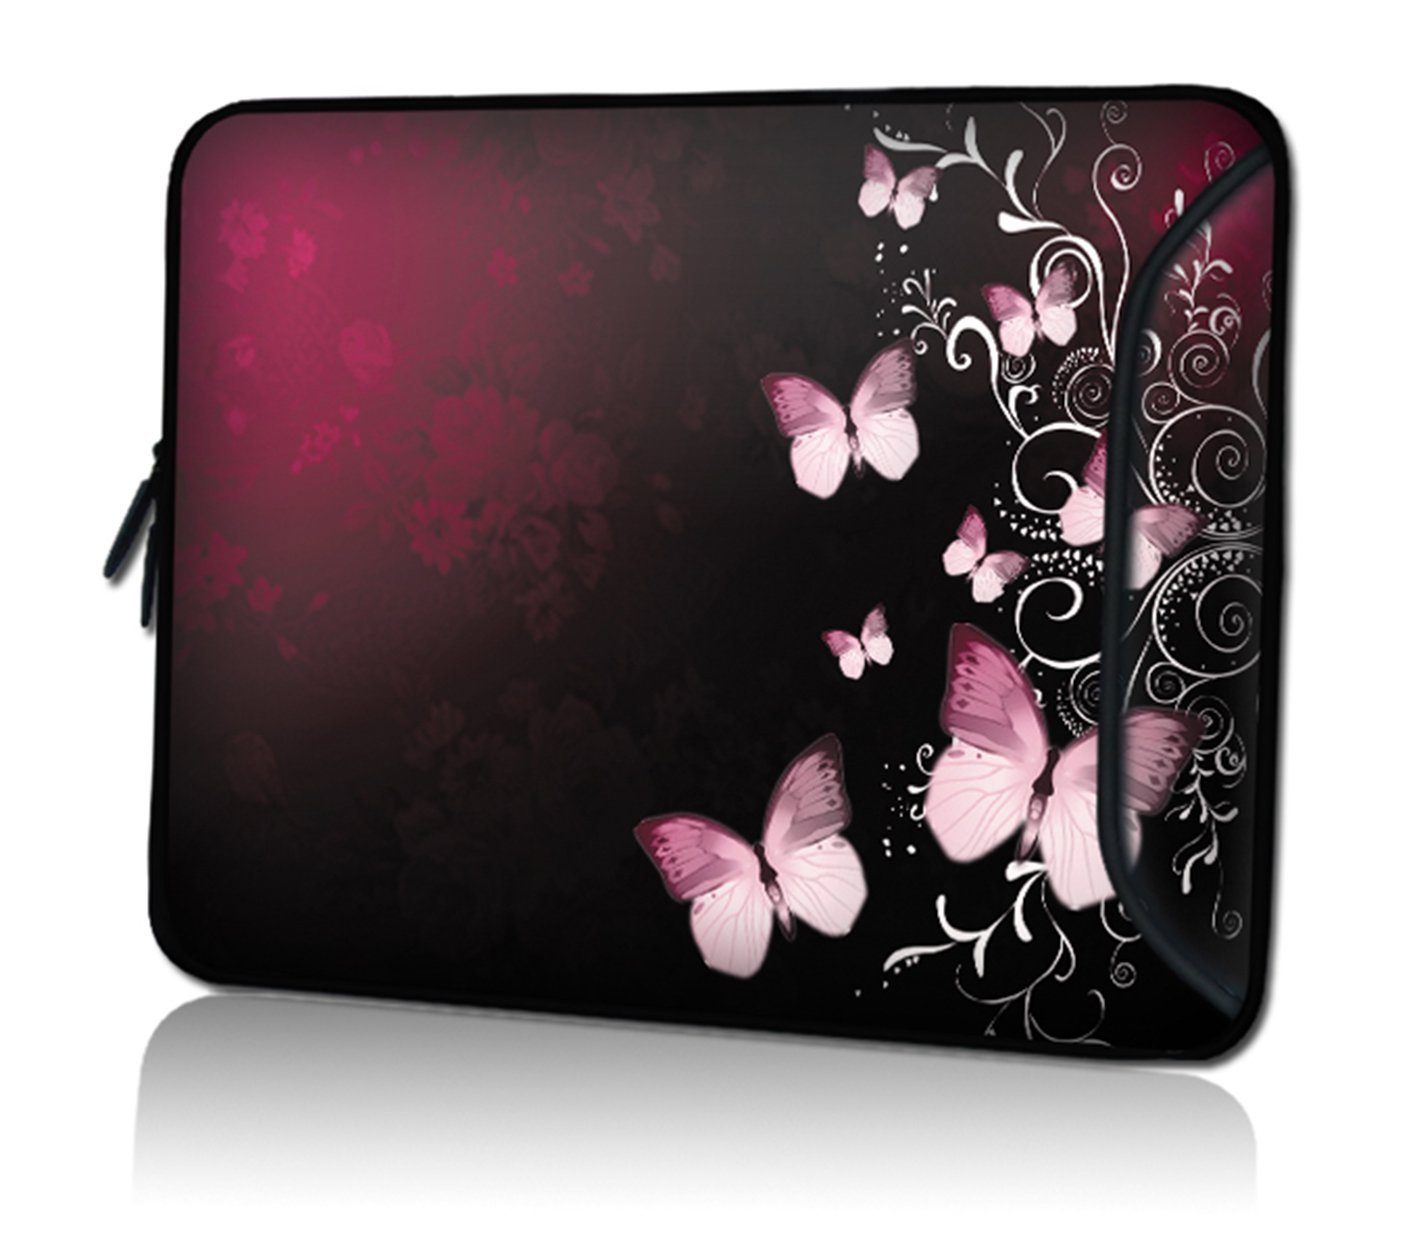 wortek Laptoptasche für Laptops bis 15,4", Butterfly Schwarz Rot, Wasserabweisend, mit Zusatzfach | Businesstaschen